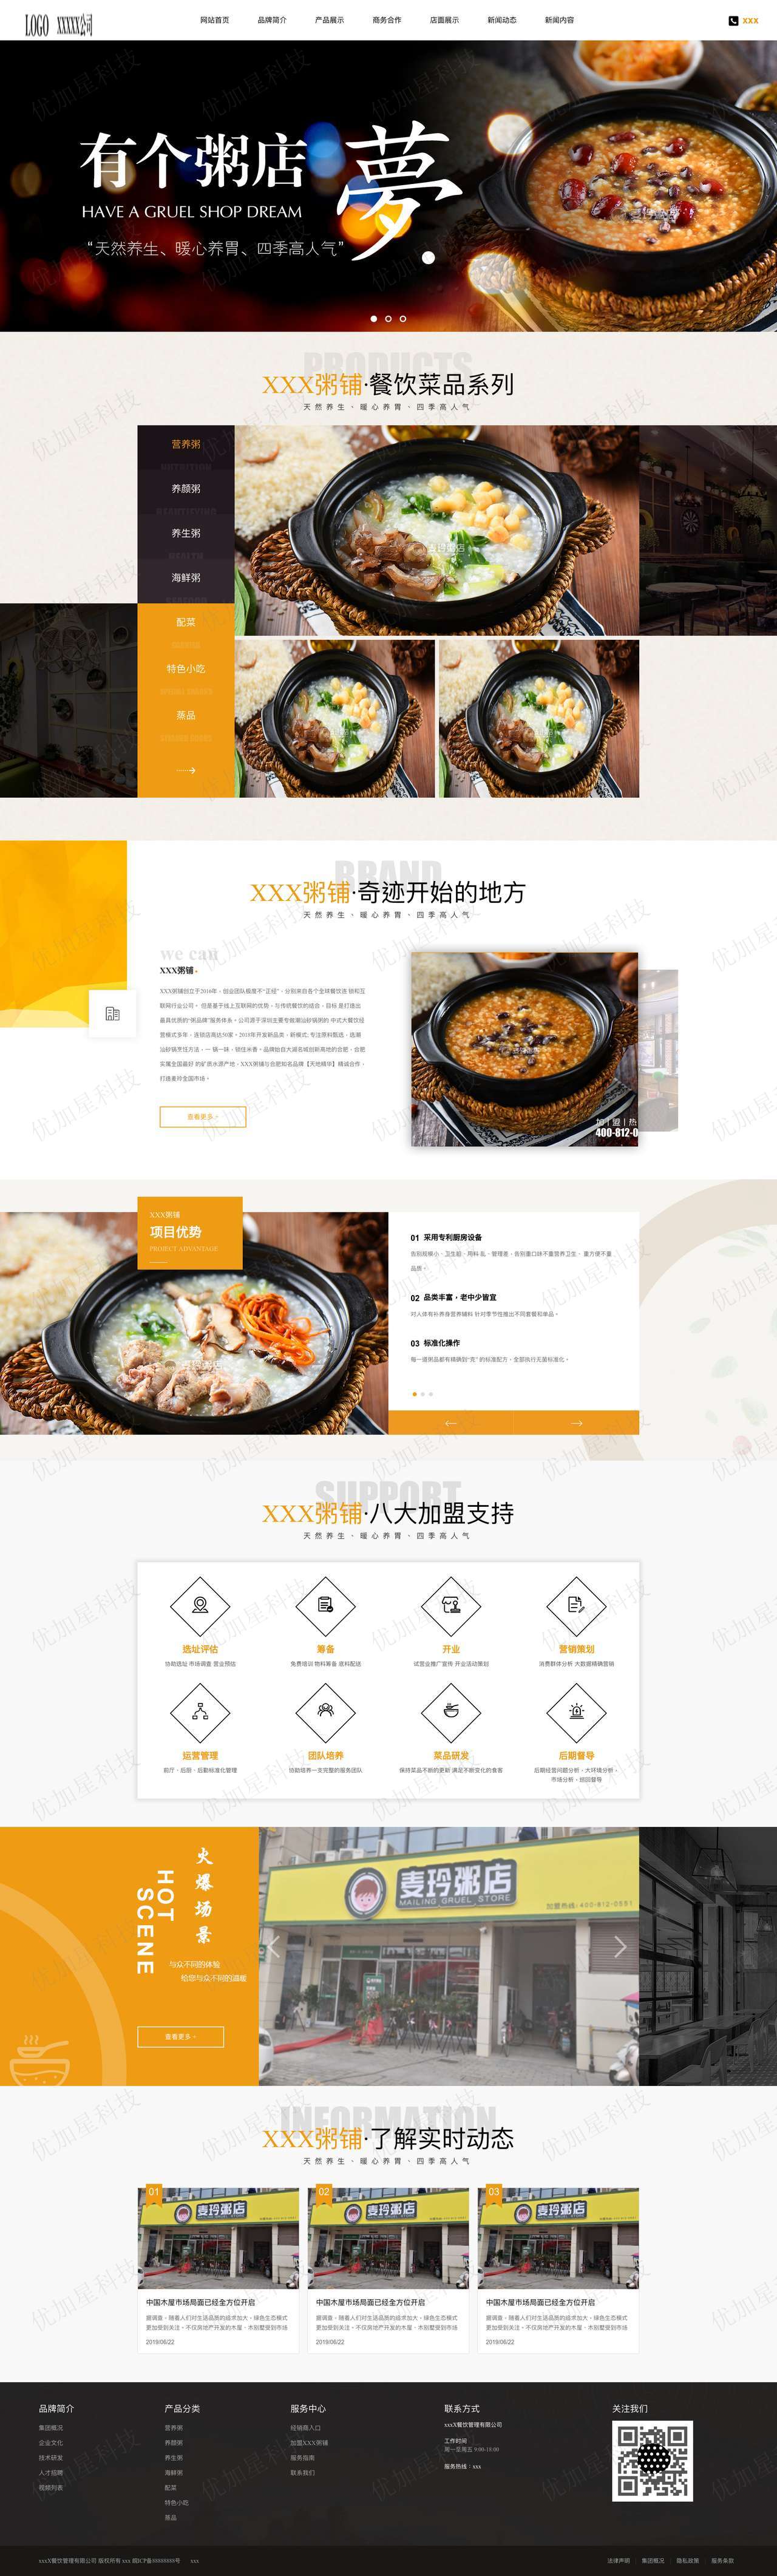 橙色诱人餐饮企业宽屏html5模板_优加星网络科技